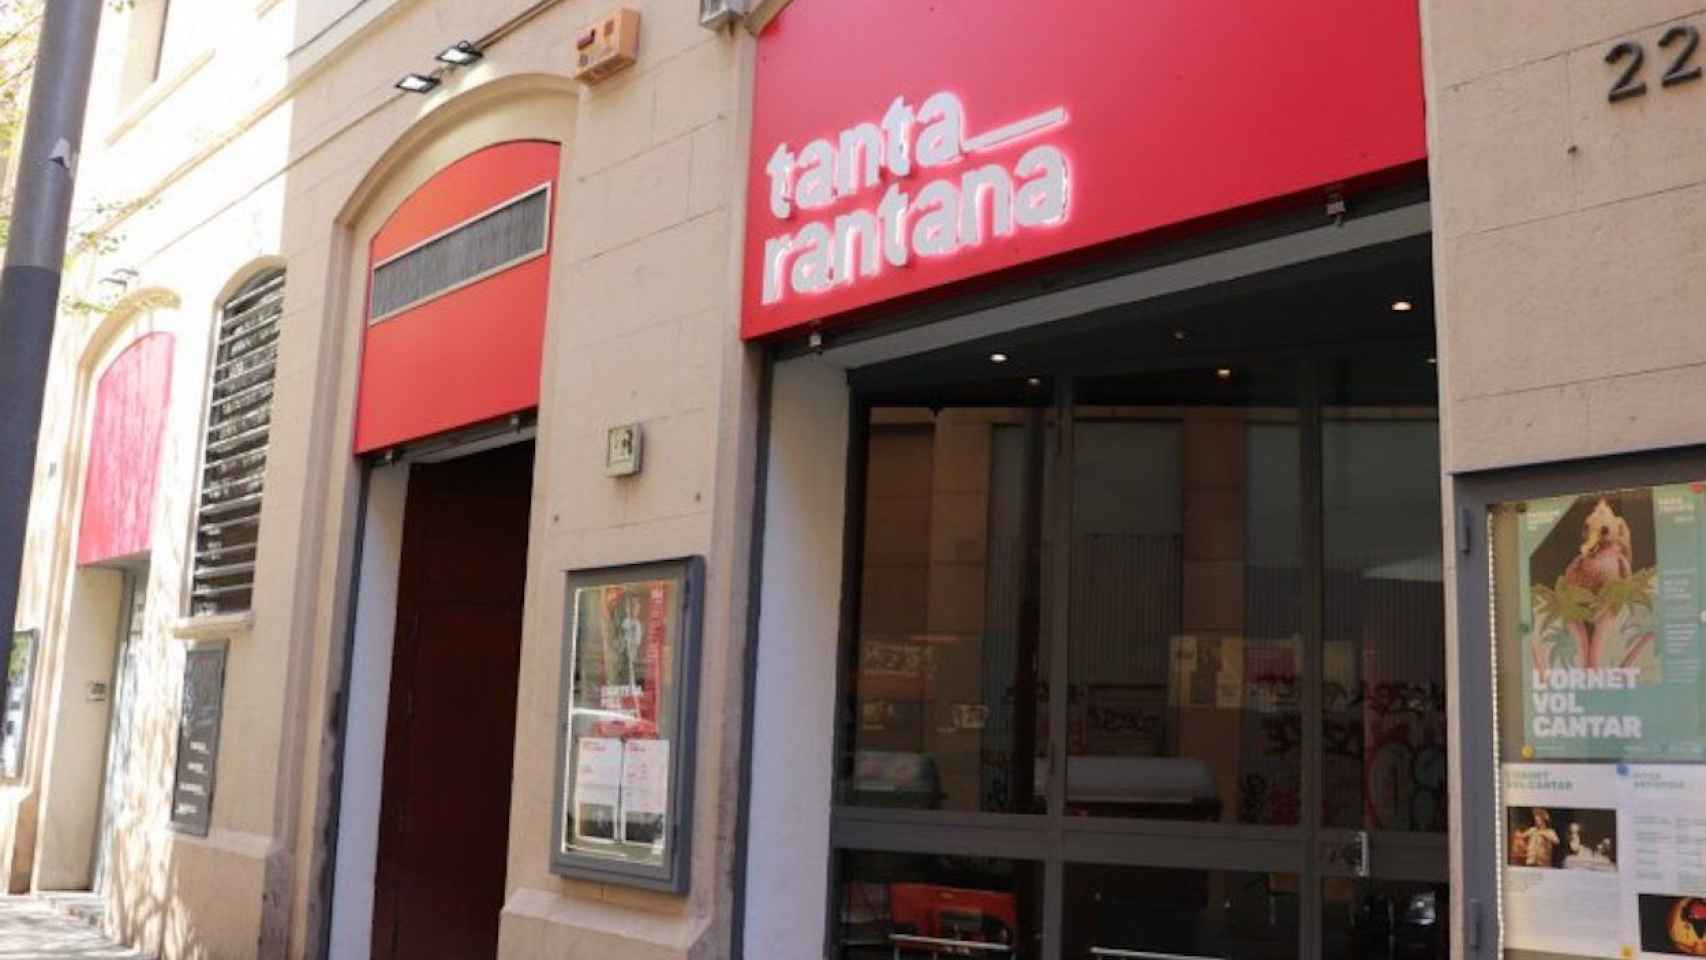 El teatro Tantarantana que ha cancelado dos proyectos por coronavirus / AJUNTAMENT DE BARCELONA